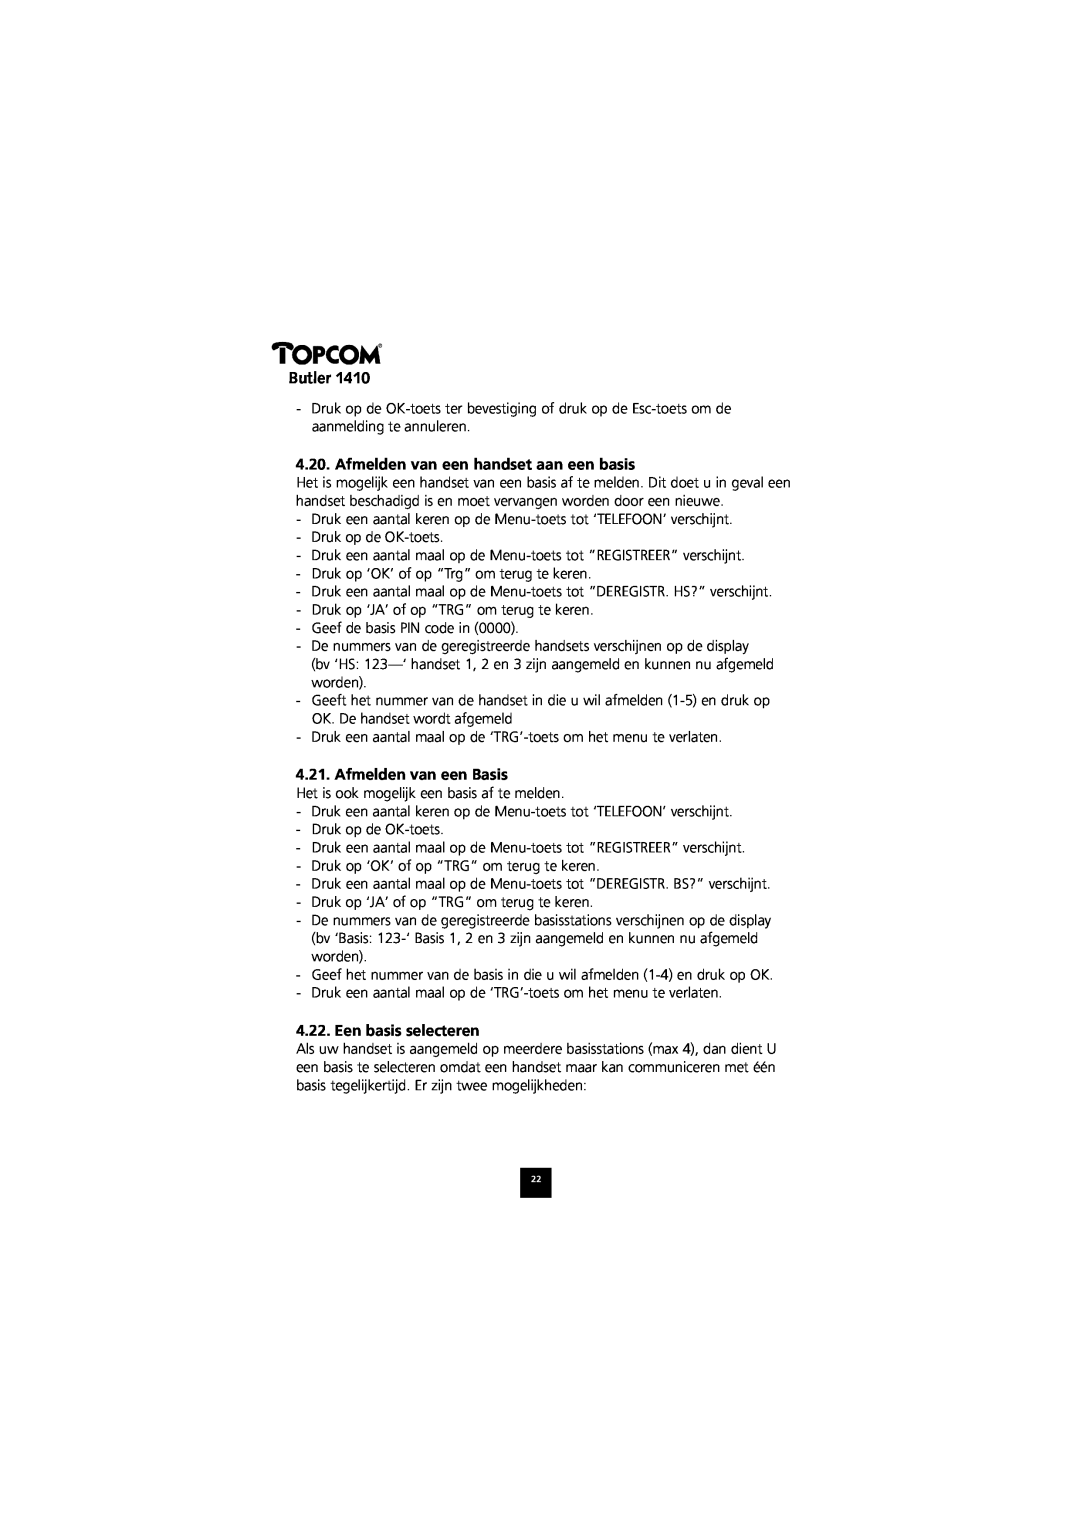 Topcom 1410 manual Afmelden van een handset aan een basis, Afmelden van een Basis, Een basis selecteren, Butler 